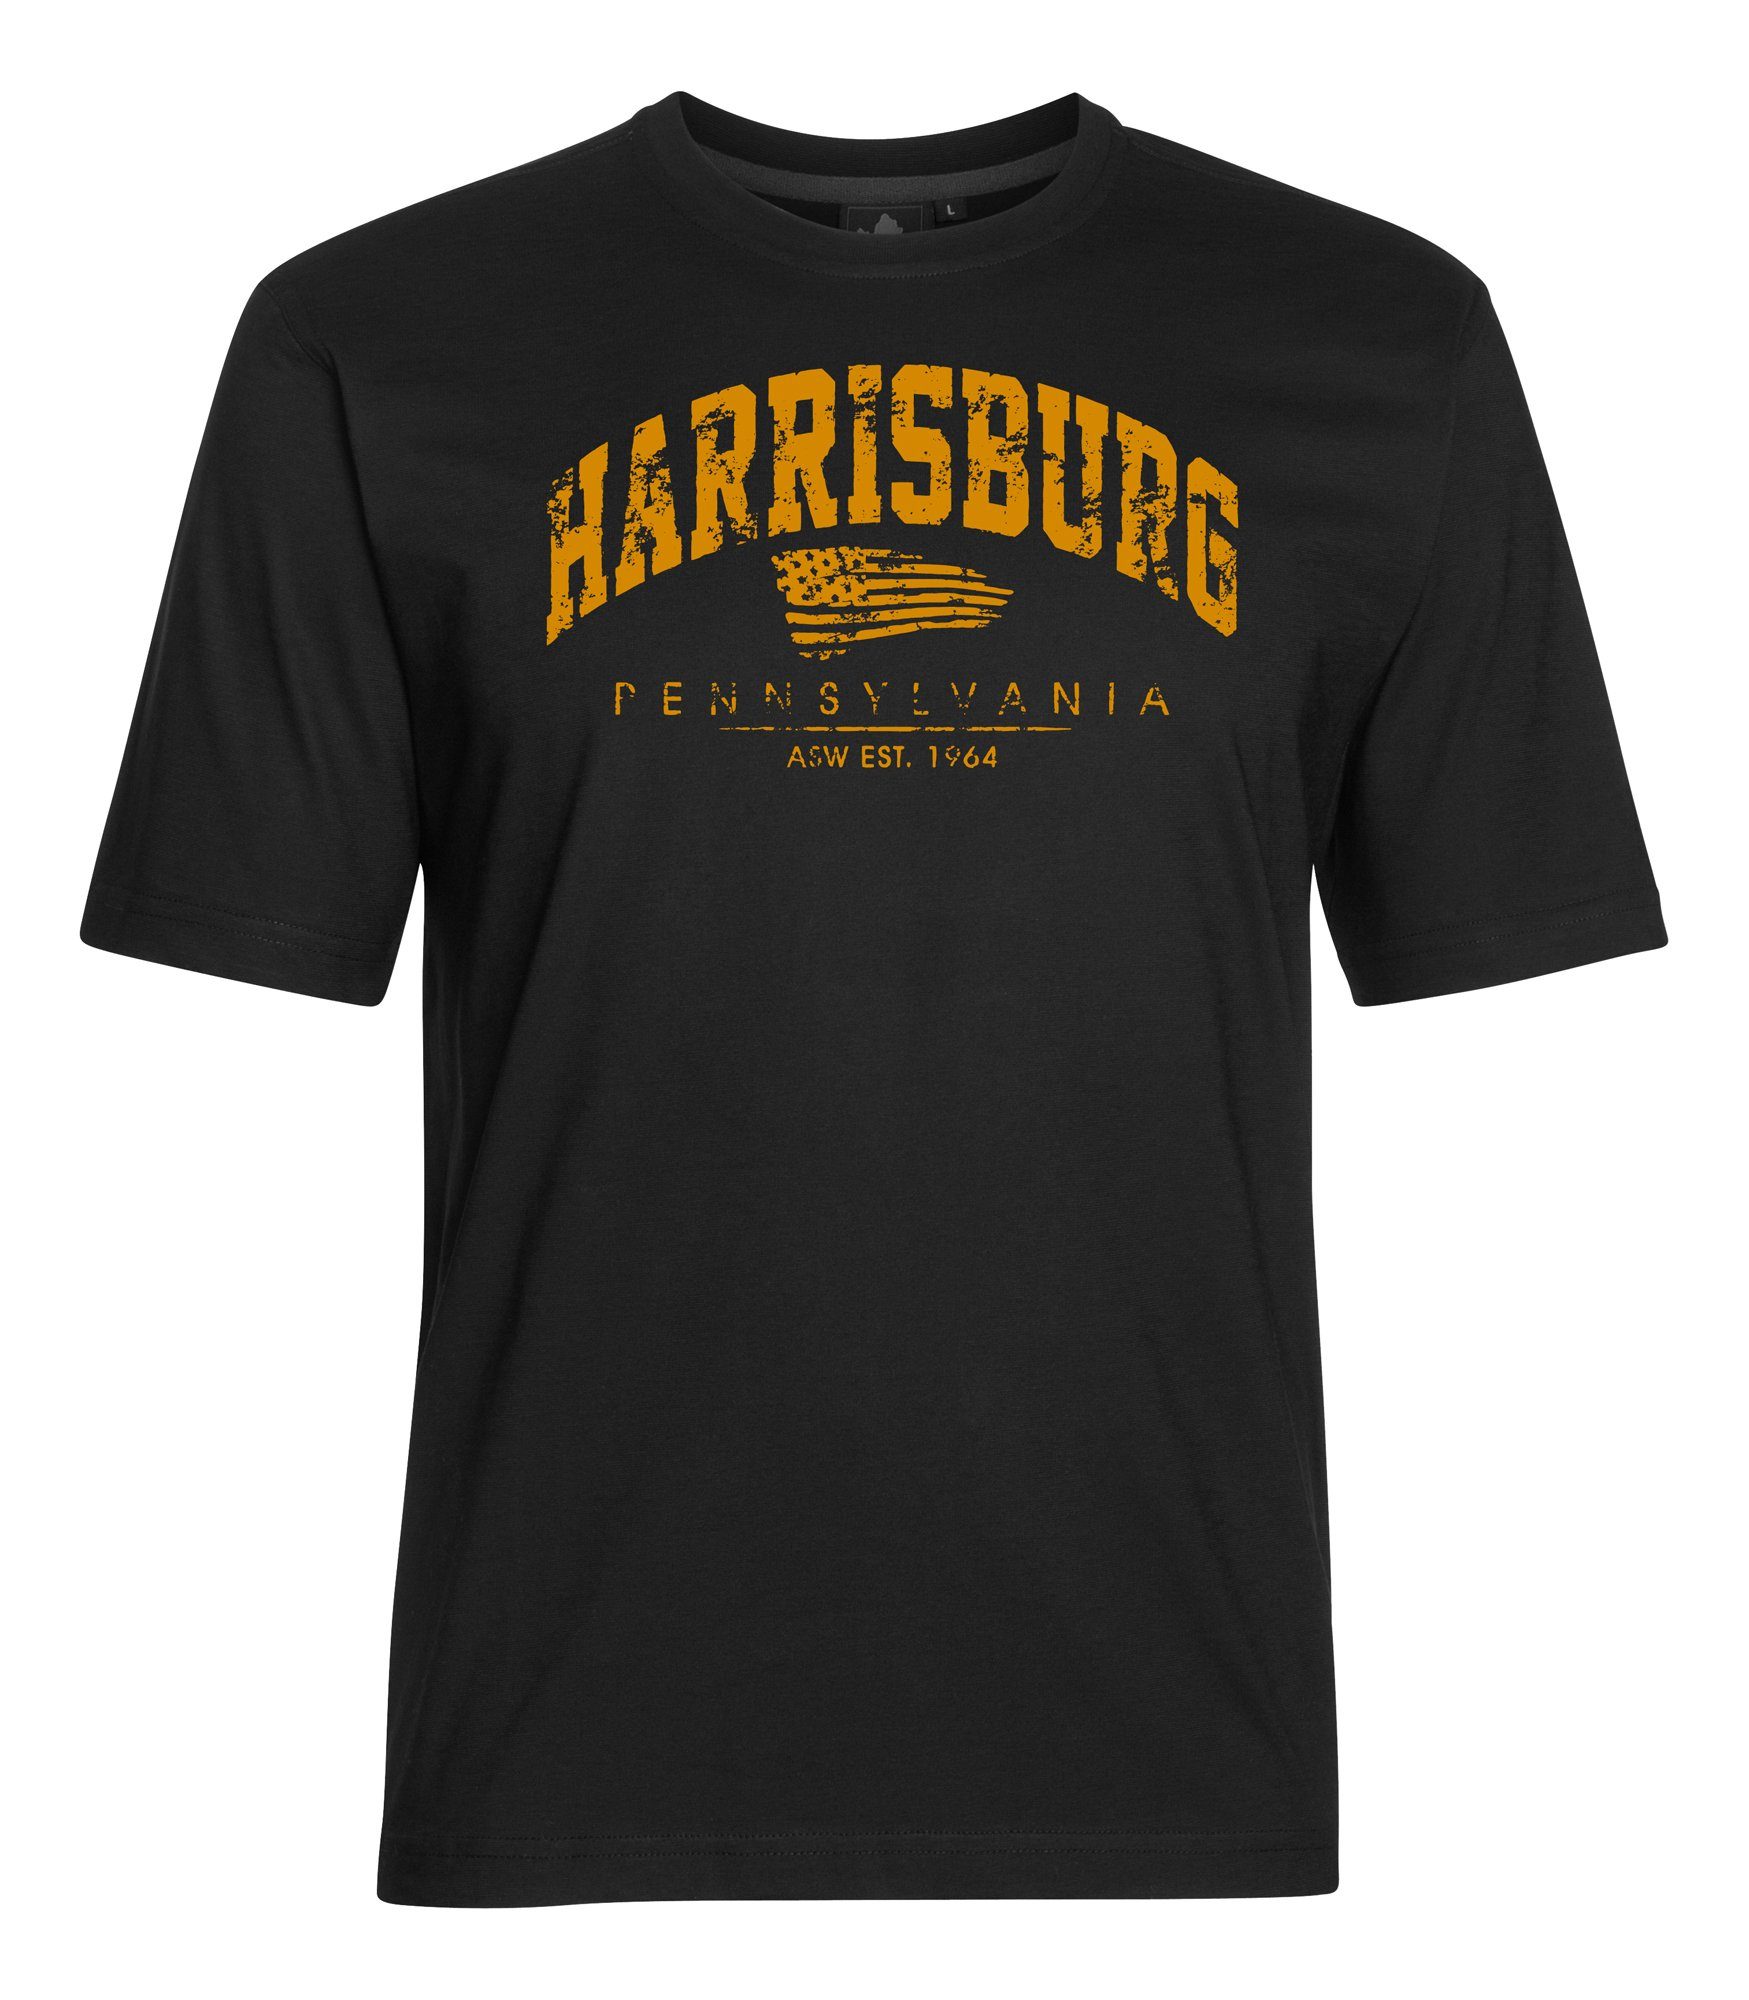 AHORN SPORTSWEAR T-Shirt HARRISBURG mit sportlichem Print